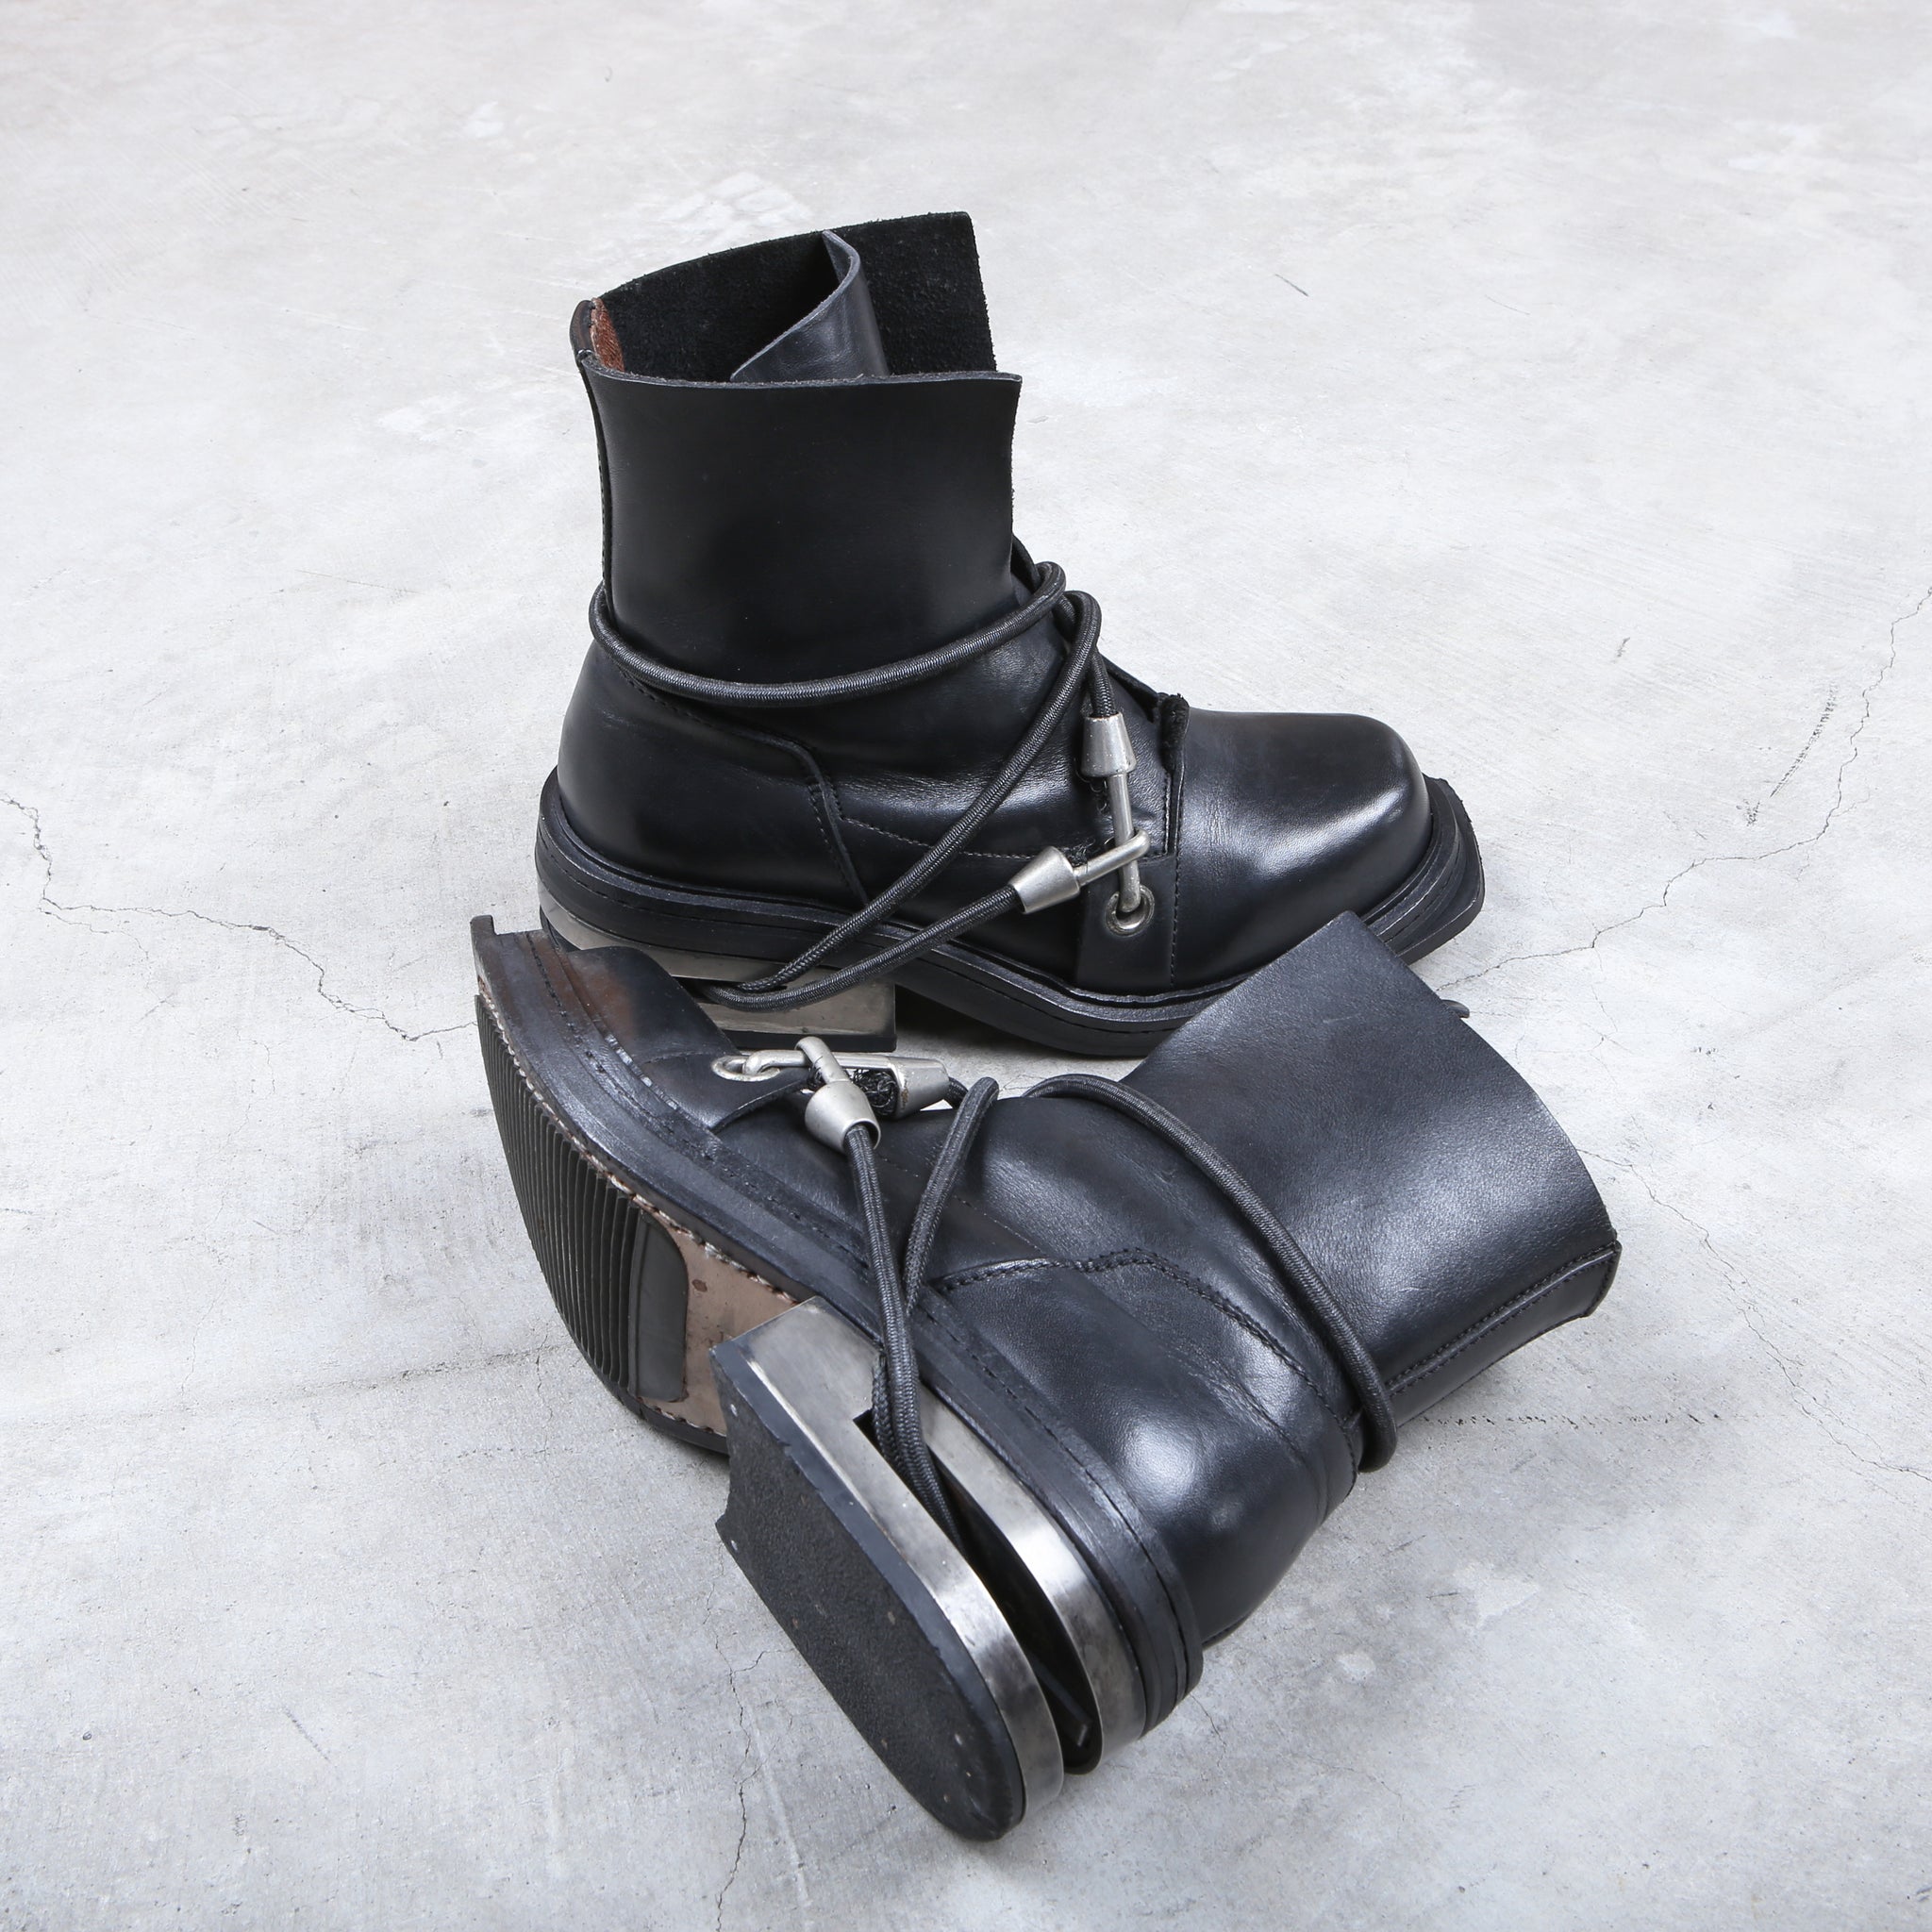 Dirk Bikkembergs Black Bungee Boots 1996  Steel Cut Size 38